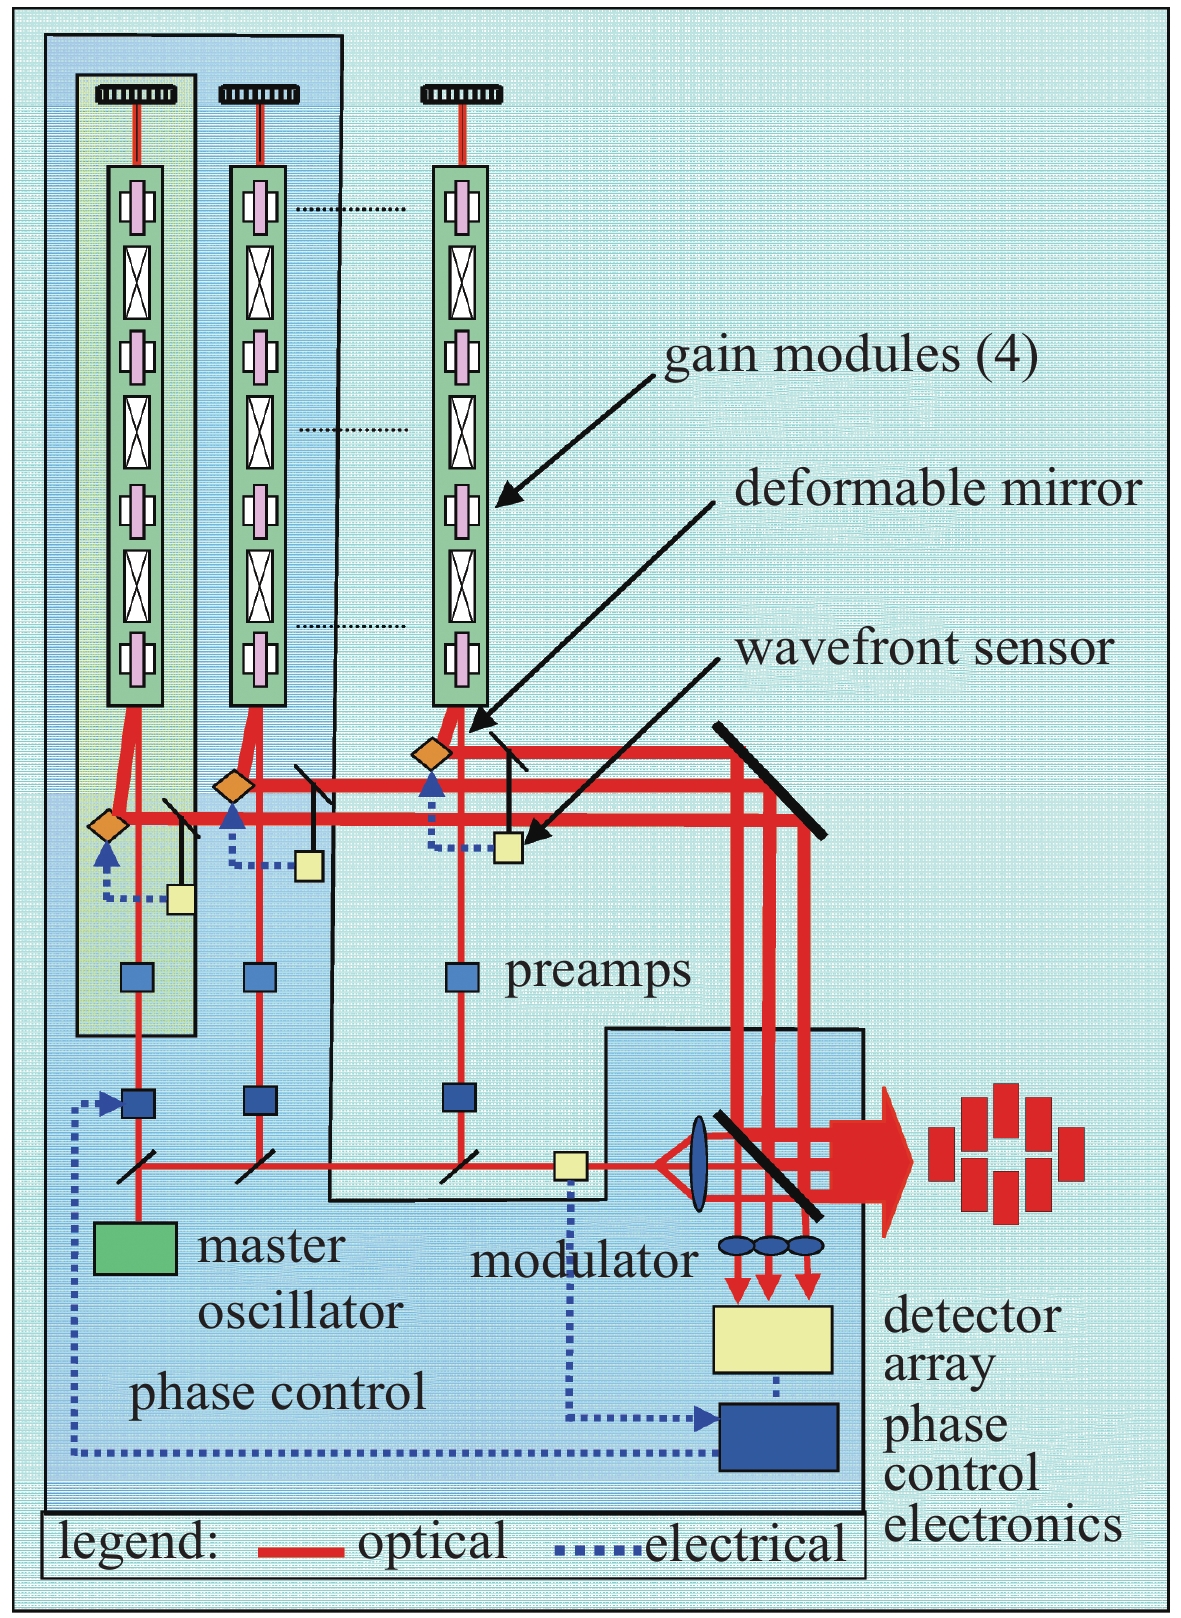 Schematic diagram of 105 kW laser of Northrop Grumman